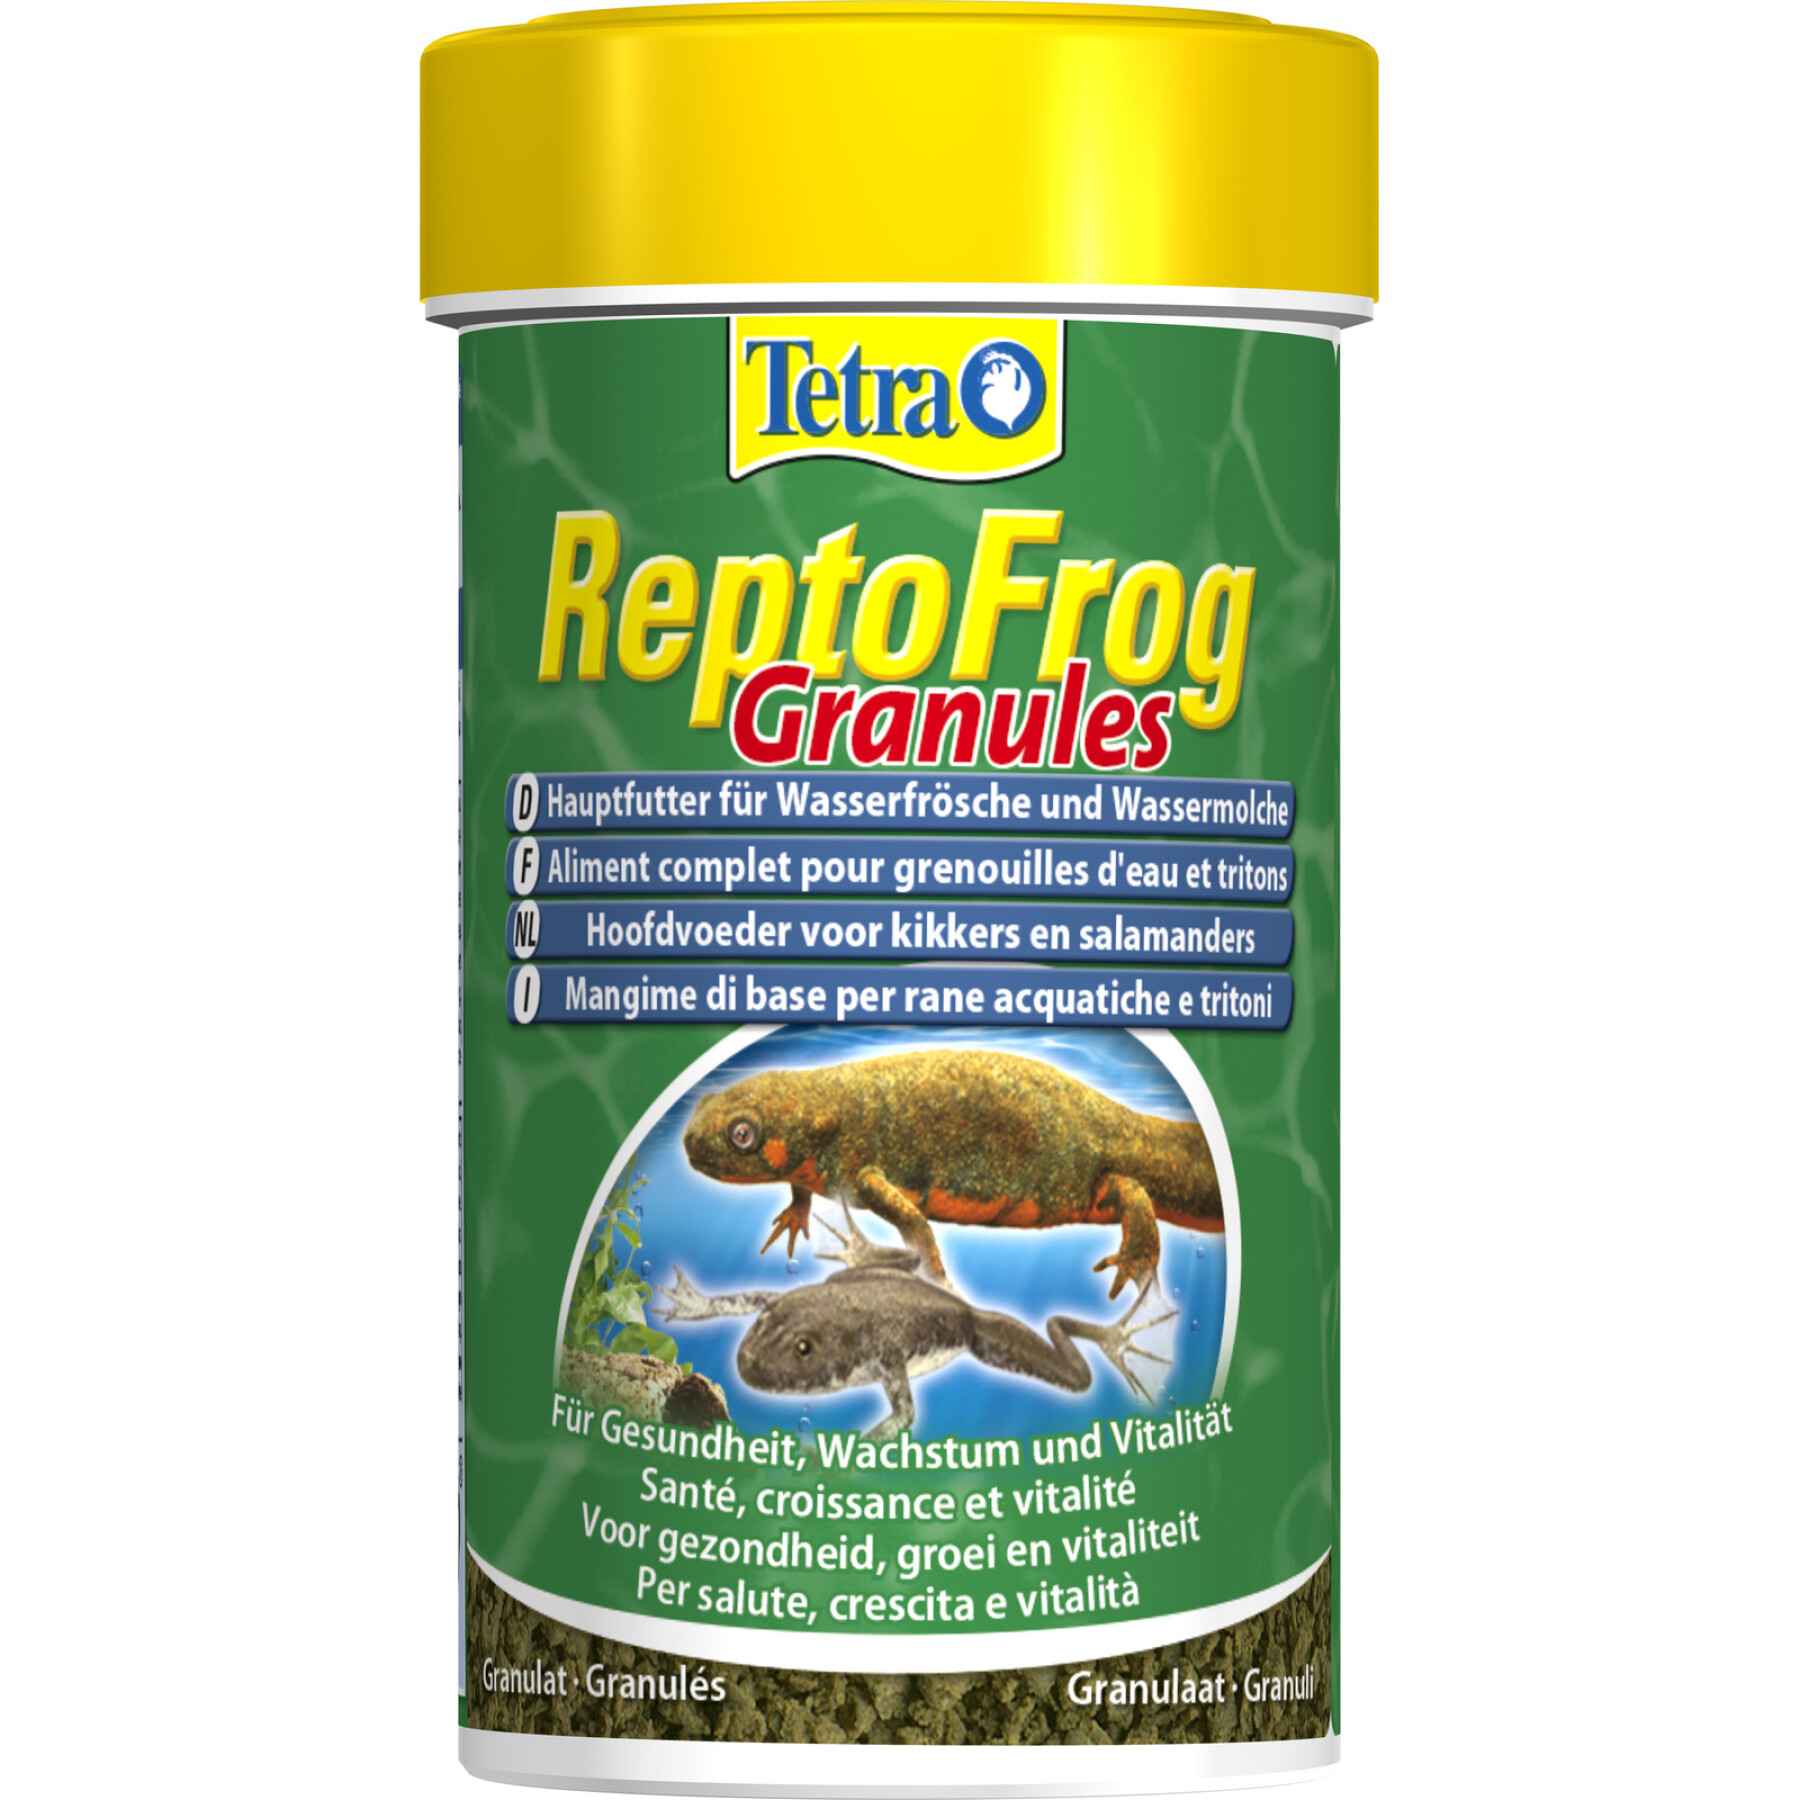 Complementos alimenticios en gránulos Tetra Reptofrog